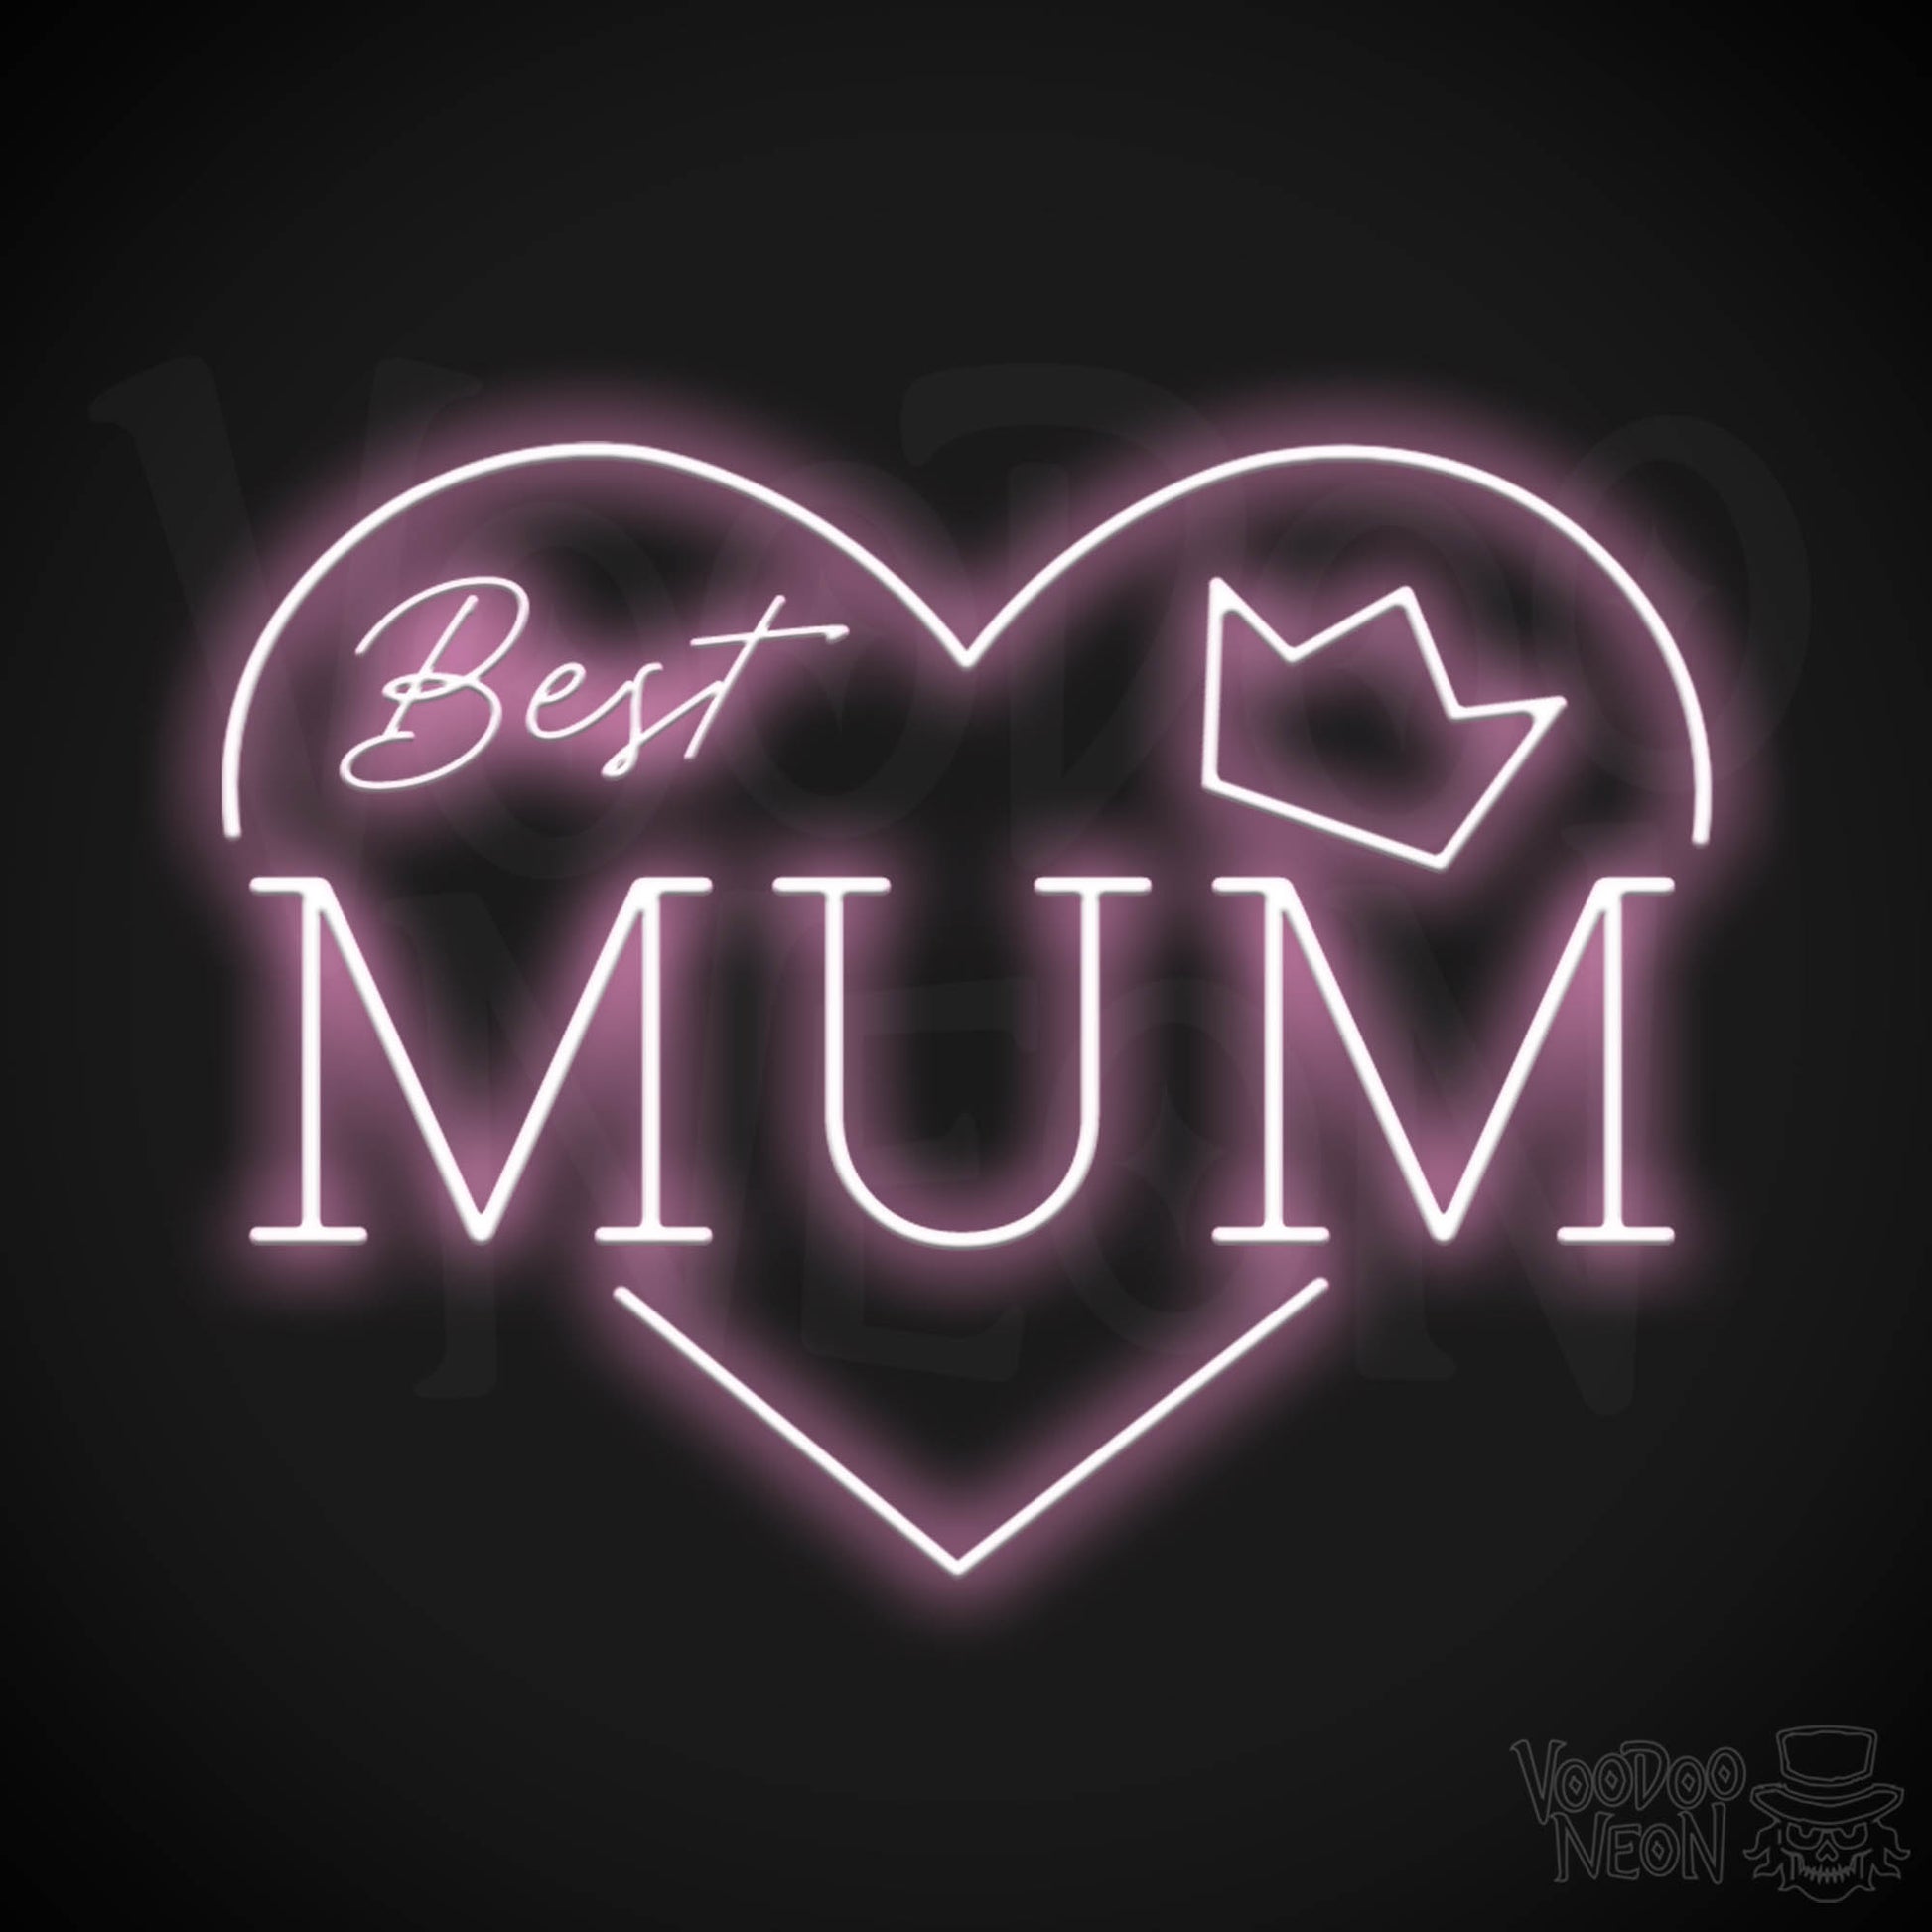 Best Mum Neon Sign - Neon Best Mum Sign - Wall Art - Color Light Pink